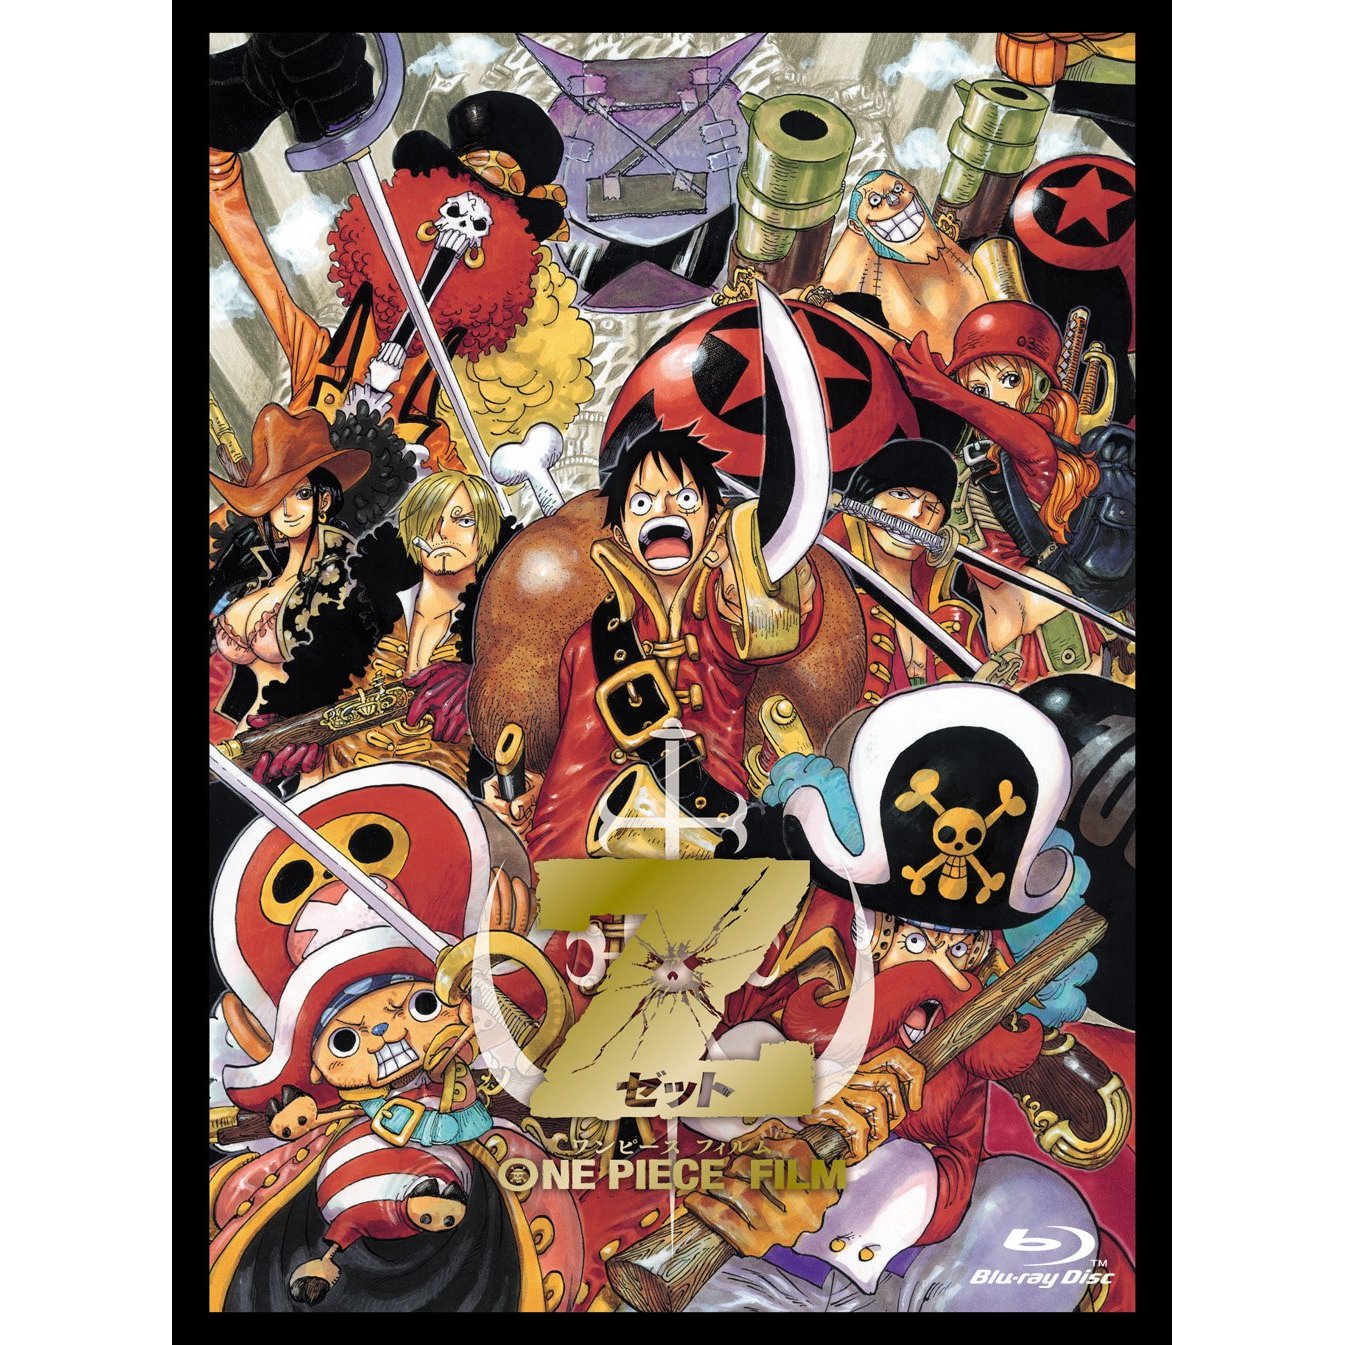 One Piece エピソード オブ ルフィ ハンドアイランドの冒険 初回生産限定版 の在庫状況を紹介 ワンピース初回限定シリーズ はココで安く購入出来る